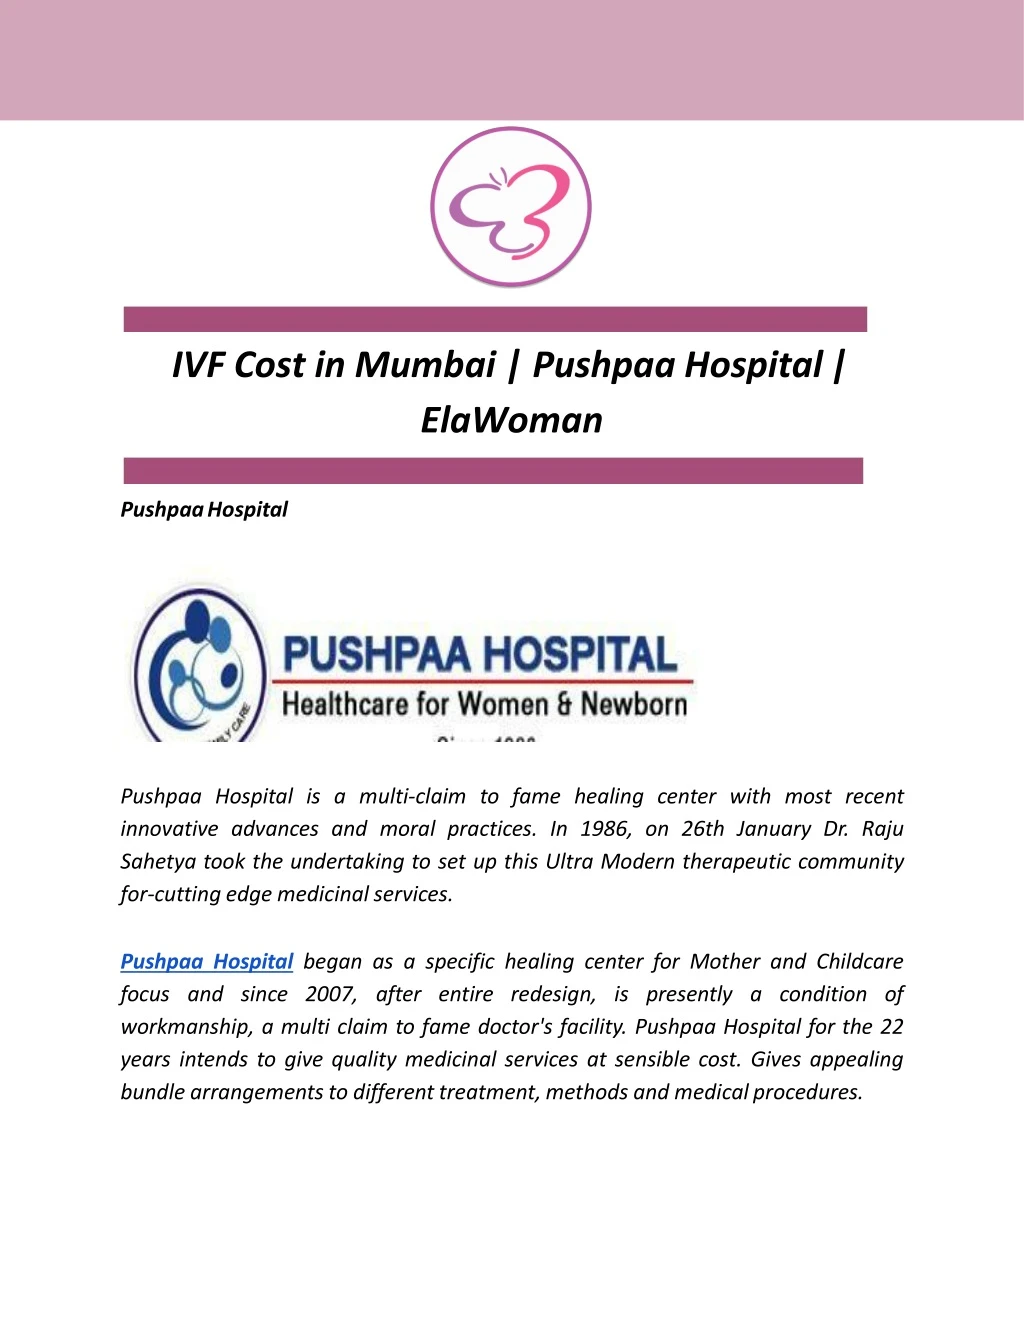 ivf cost in mumbai pushpaa hospital elawoman